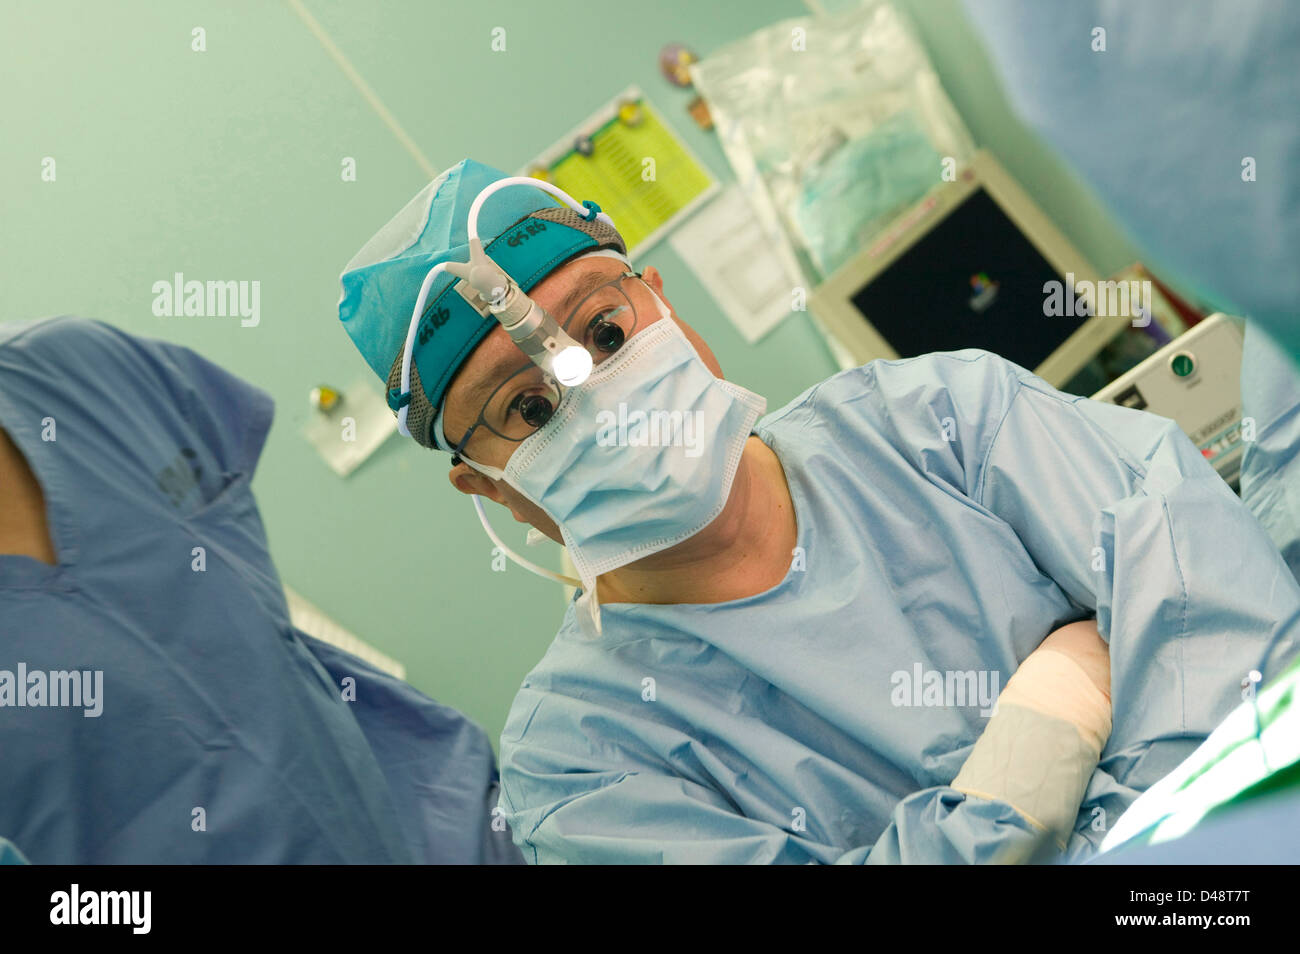 Un cirujano lleva un micro lámpara de cabeza que utiliza en su trabajo. Foto de stock